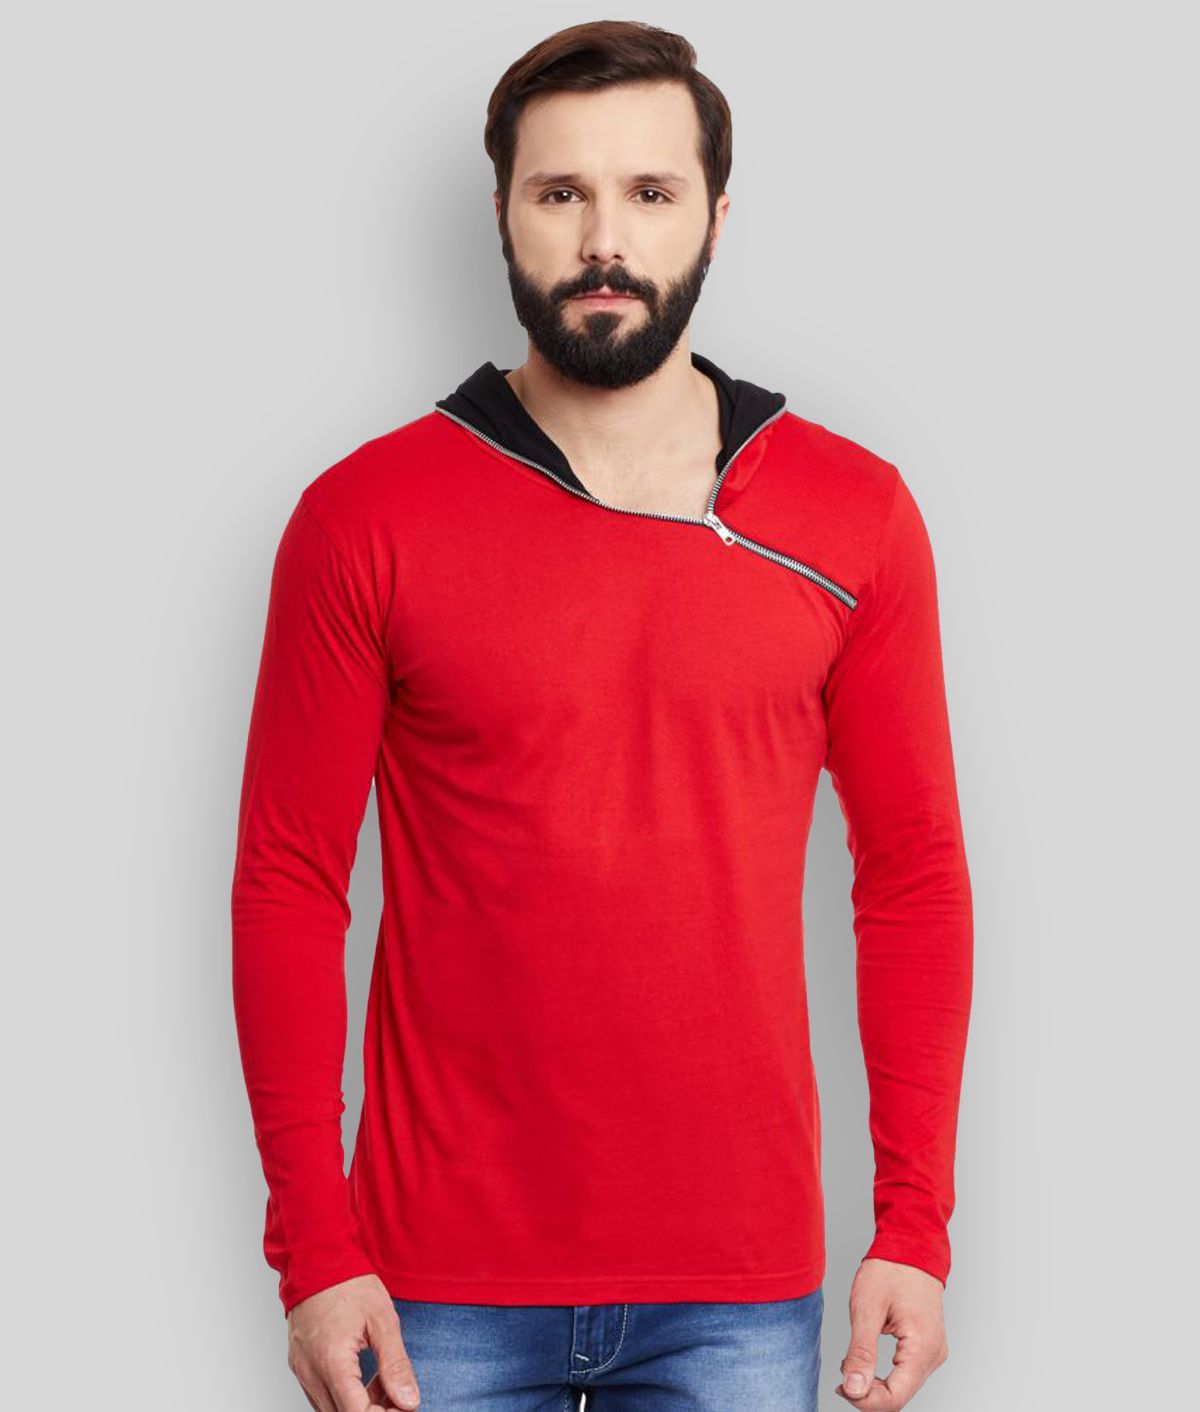 Gritstones - Red Cotton Blend Regular Fit Men's T-Shirt ( Pack of 1 )